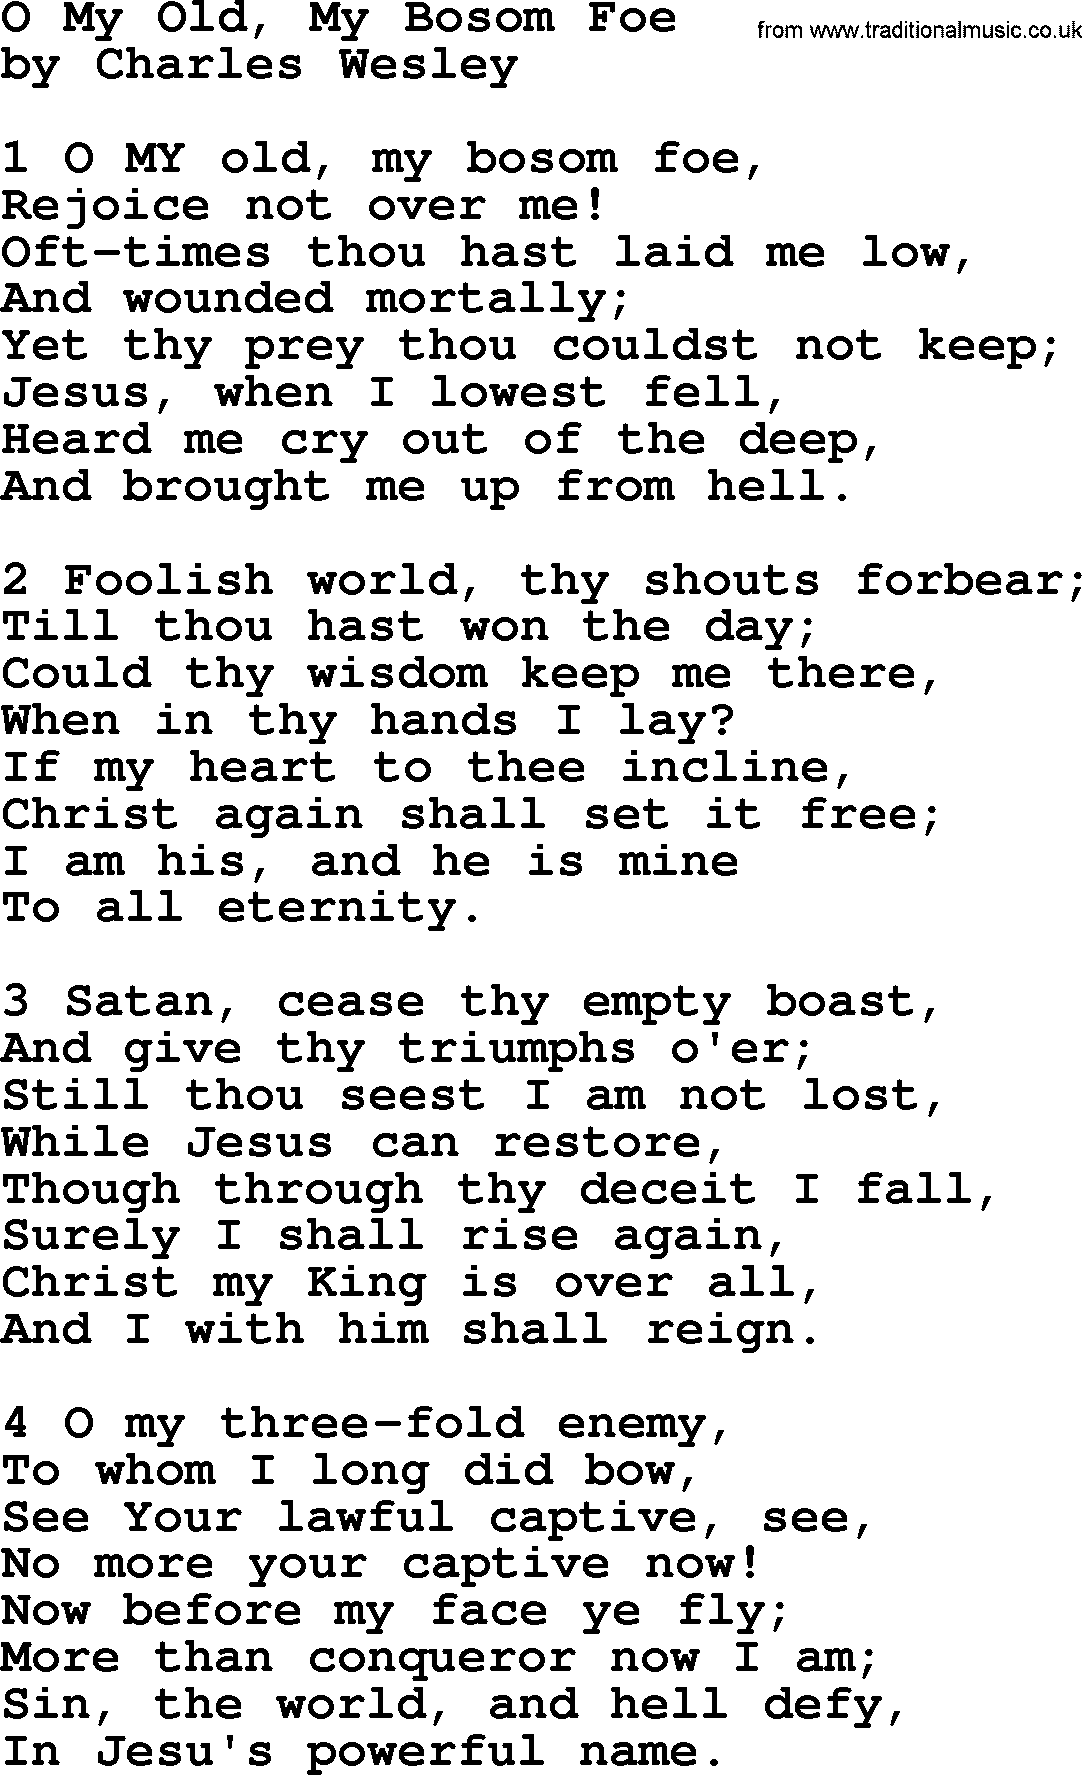 Charles Wesley hymn: O My Old, My Bosom Foe, lyrics